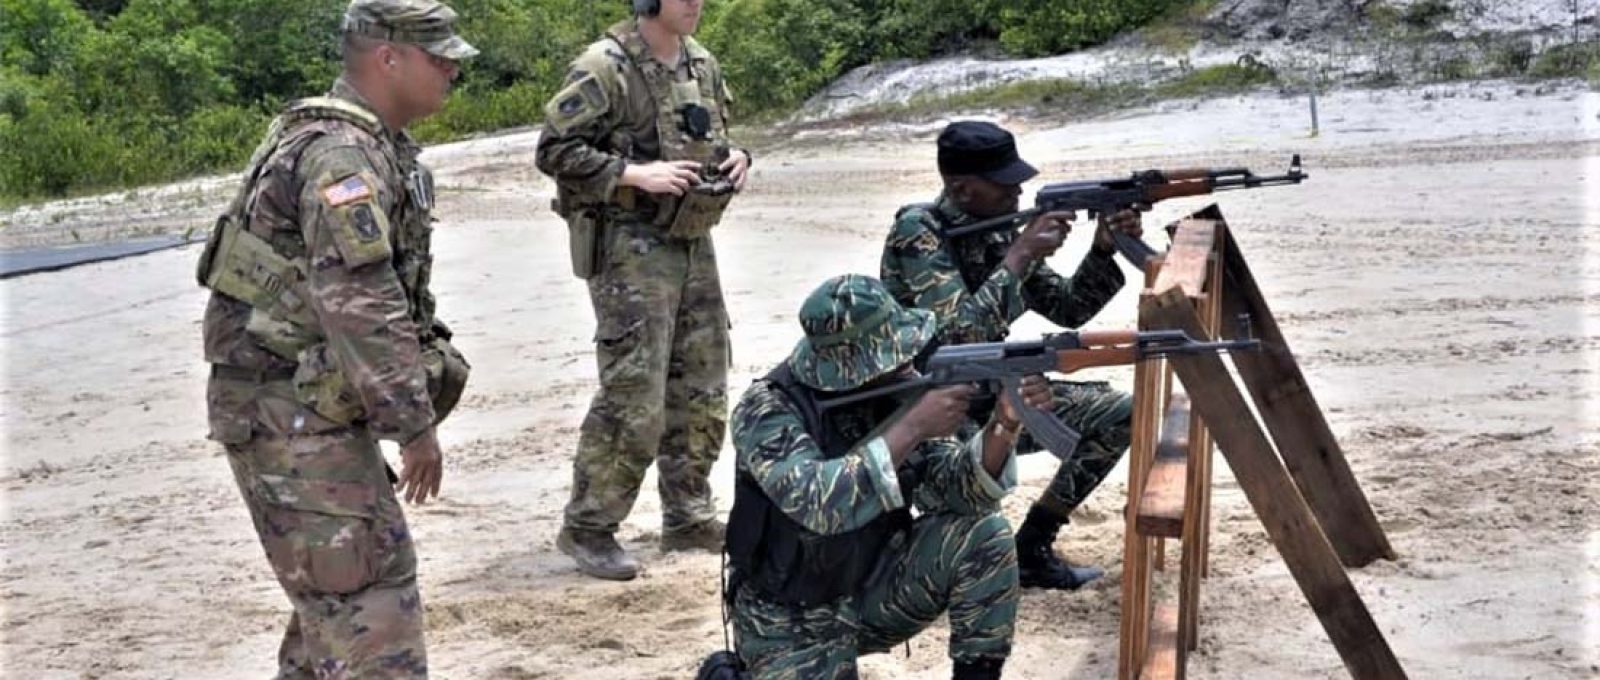 Militares da Força de Defesa da Guiana em treinamento sob supervisão de oficiais norte-americanos no exercício Tradewinds 2021, realizado entre 11 e 26 de junho de 2021 (Força de Defesa da Guiana).